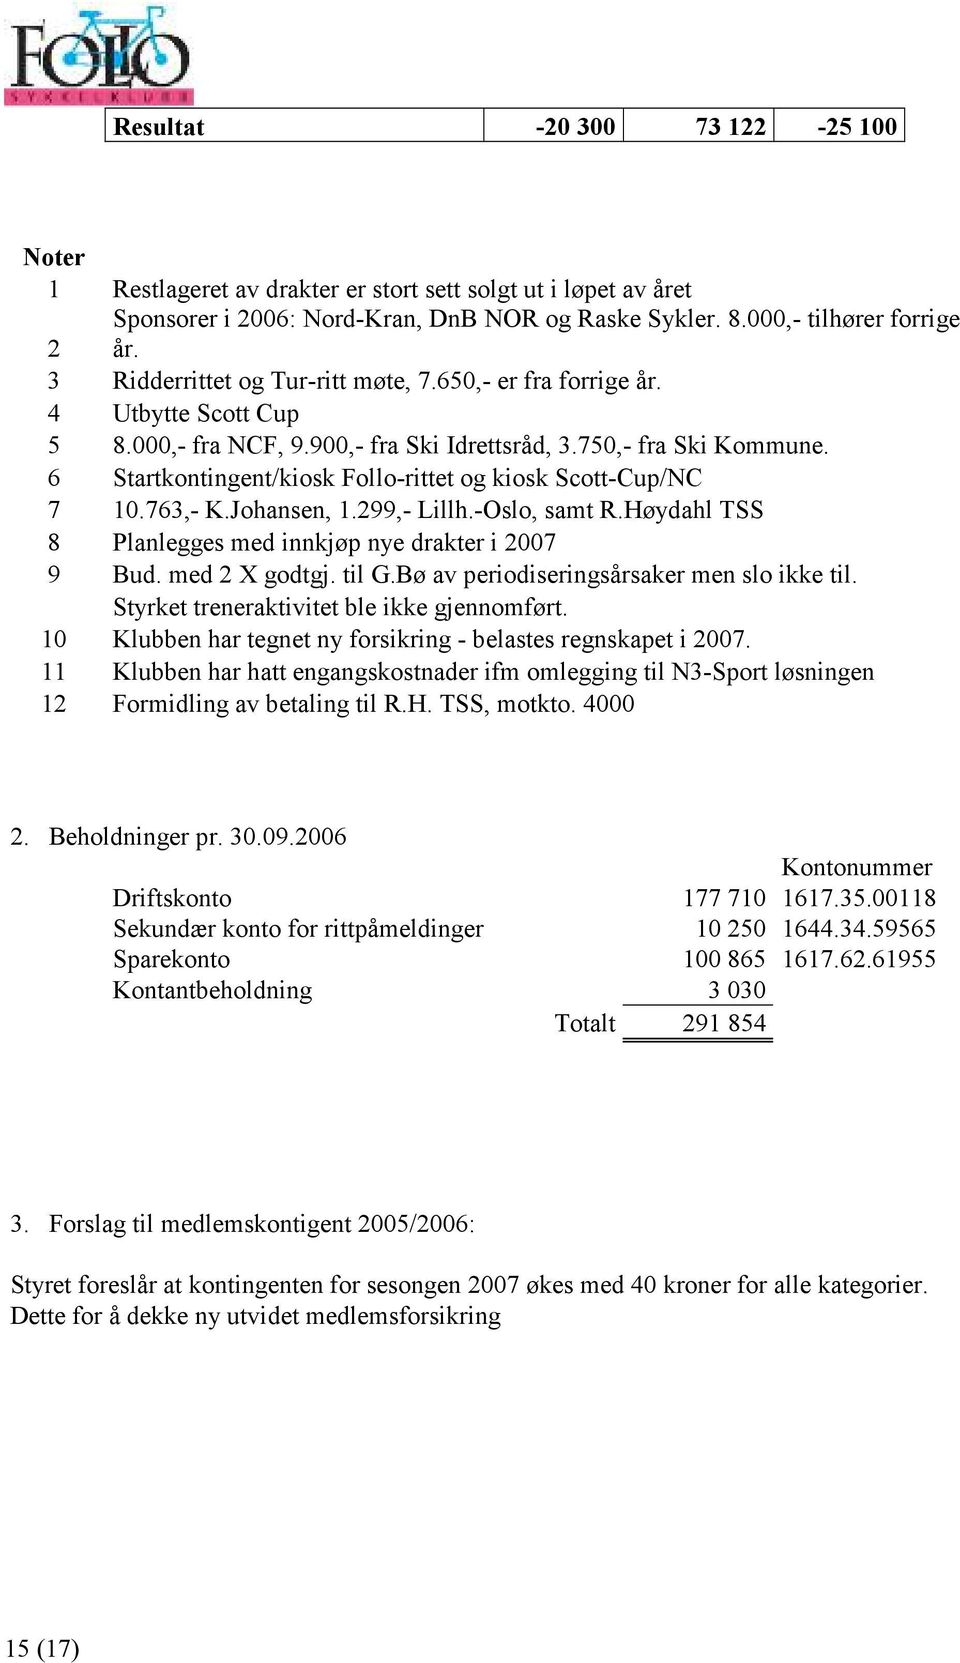 6 Startkontingent/kiosk Follo-rittet og kiosk Scott-Cup/NC 7 10.763,- K.Johansen, 1.299,- Lillh.-Oslo, samt R.Høydahl TSS 8 Planlegges med innkjøp nye drakter i 2007 9 Bud. med 2 X godtgj. til G.